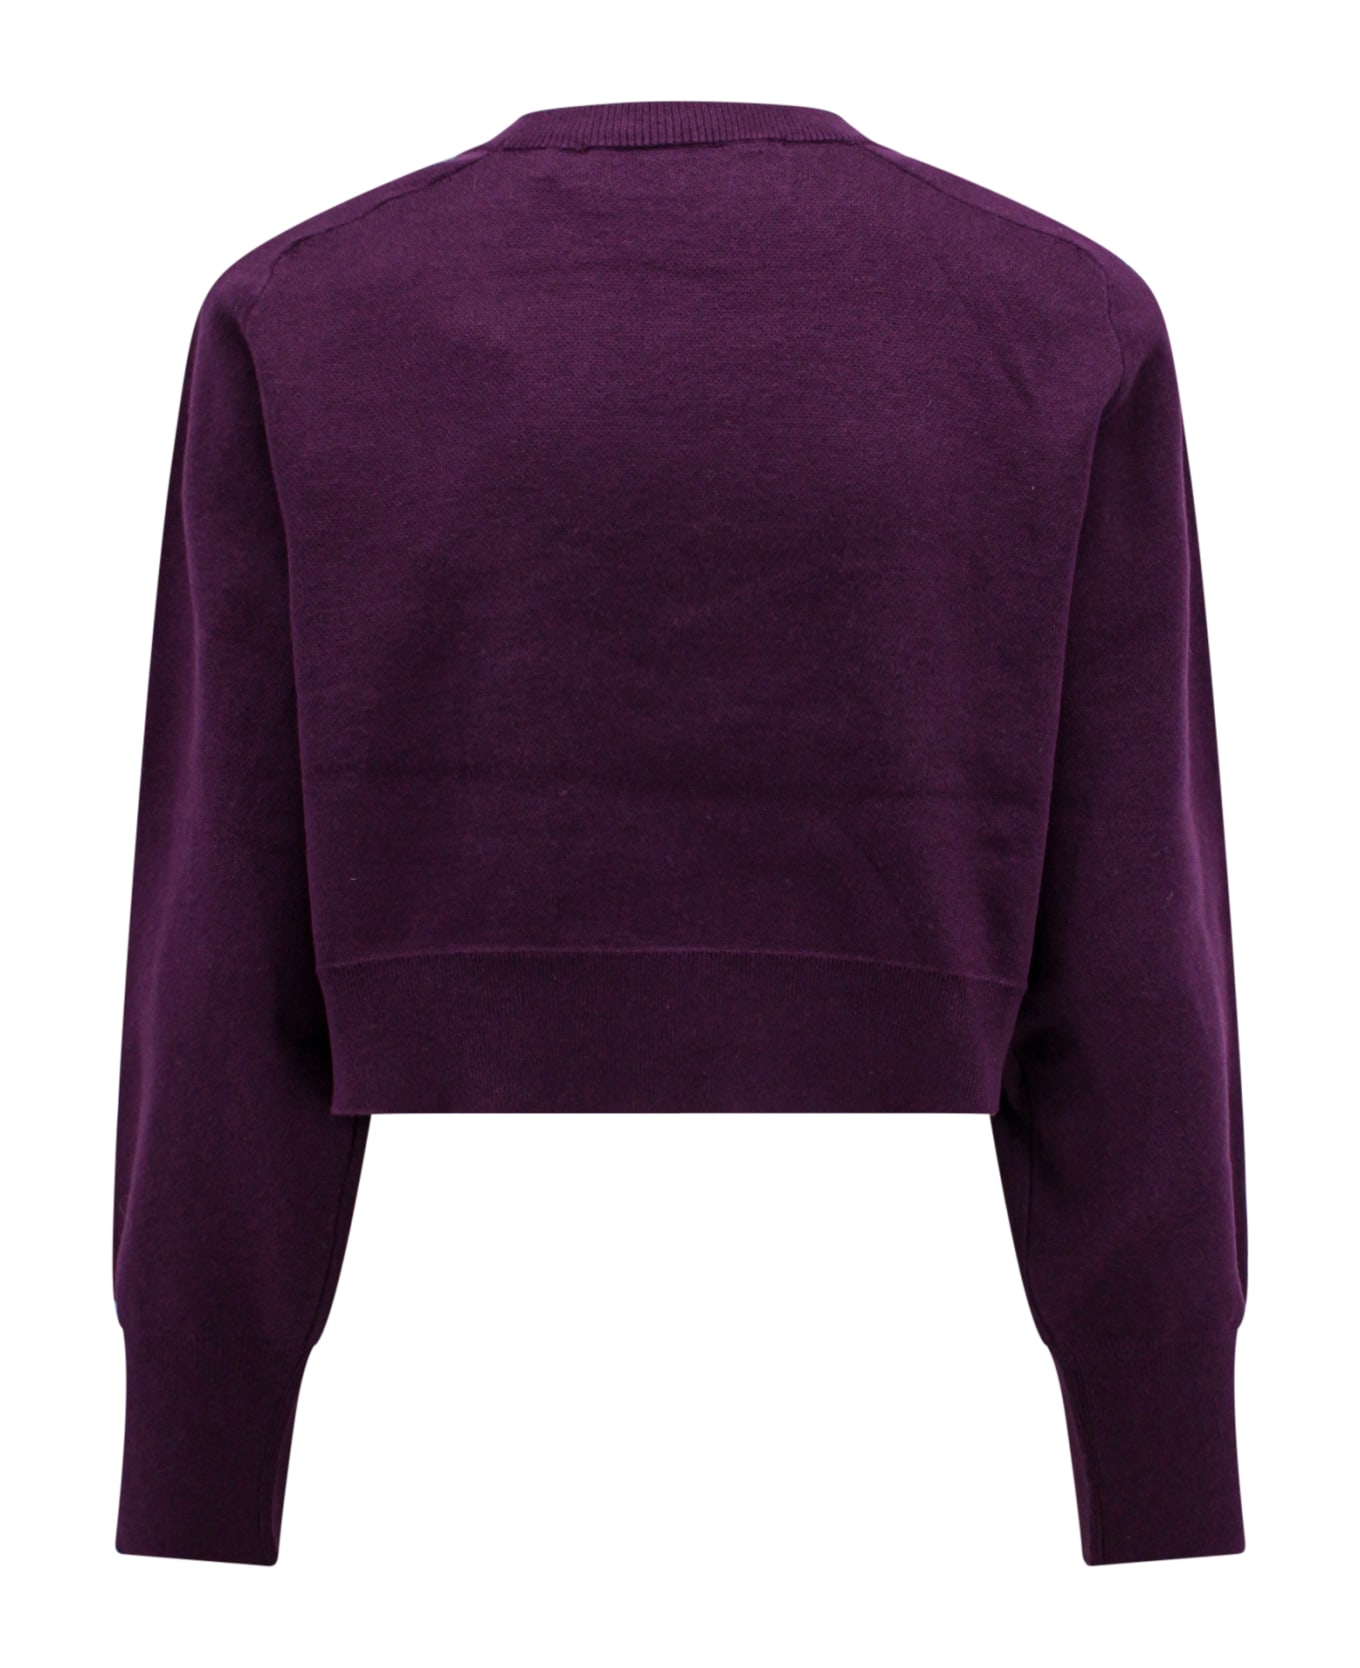 Rotate by Birger Christensen Sweater - Purple